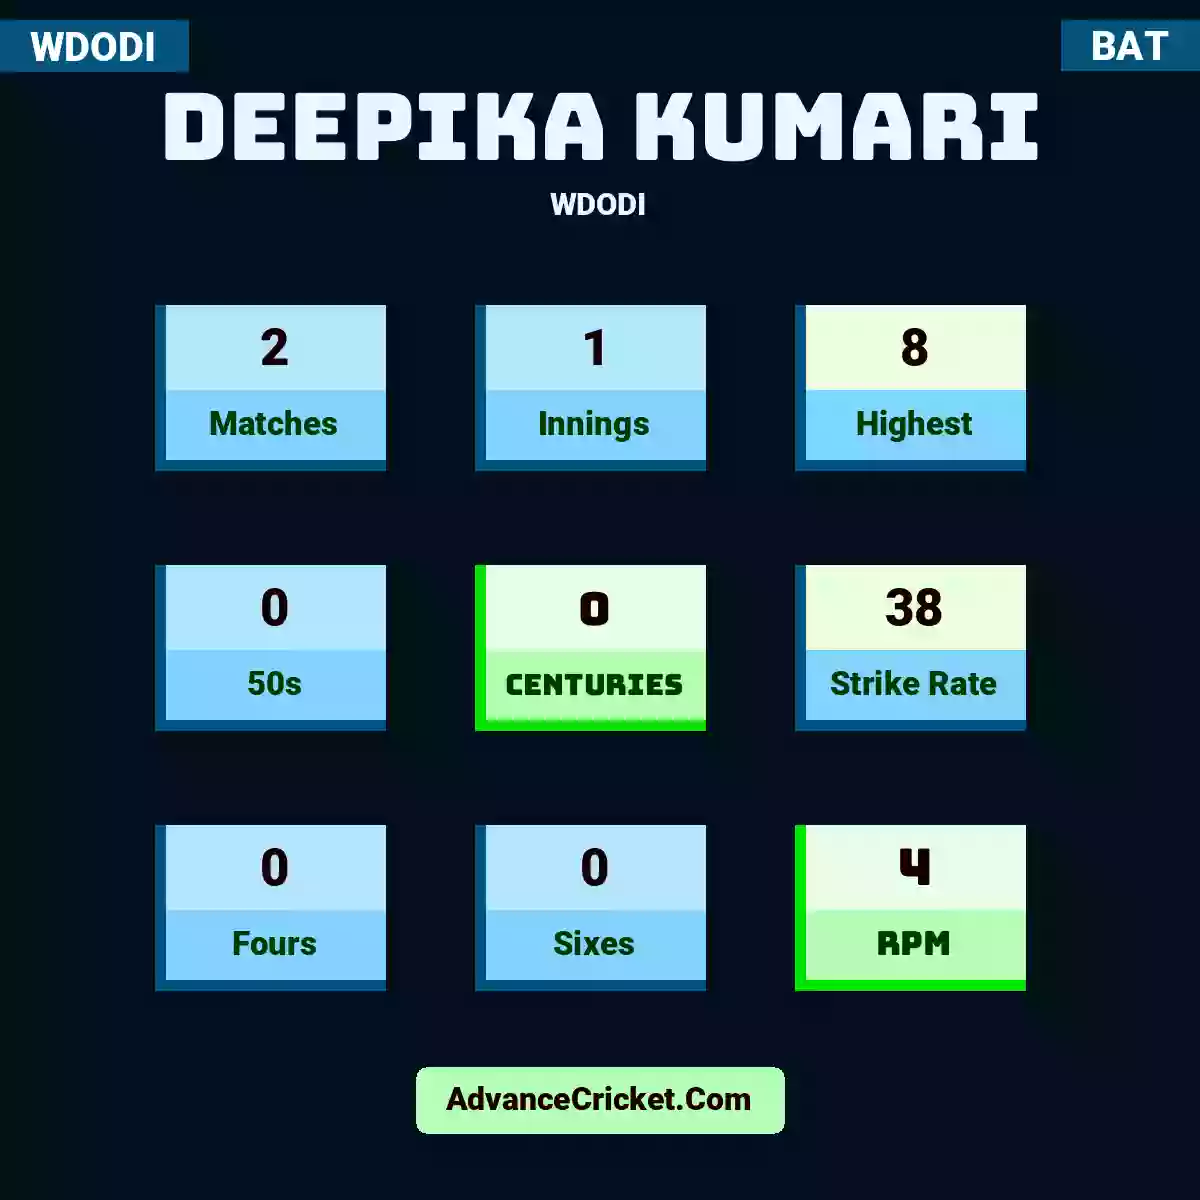 Deepika Kumari WDODI , Deepika Kumari played 2 matches, scored 8 runs as highest, 0 half-centuries, and 0 centuries, with a strike rate of 38. D.Kumari hit 0 fours and 0 sixes, with an RPM of 4.